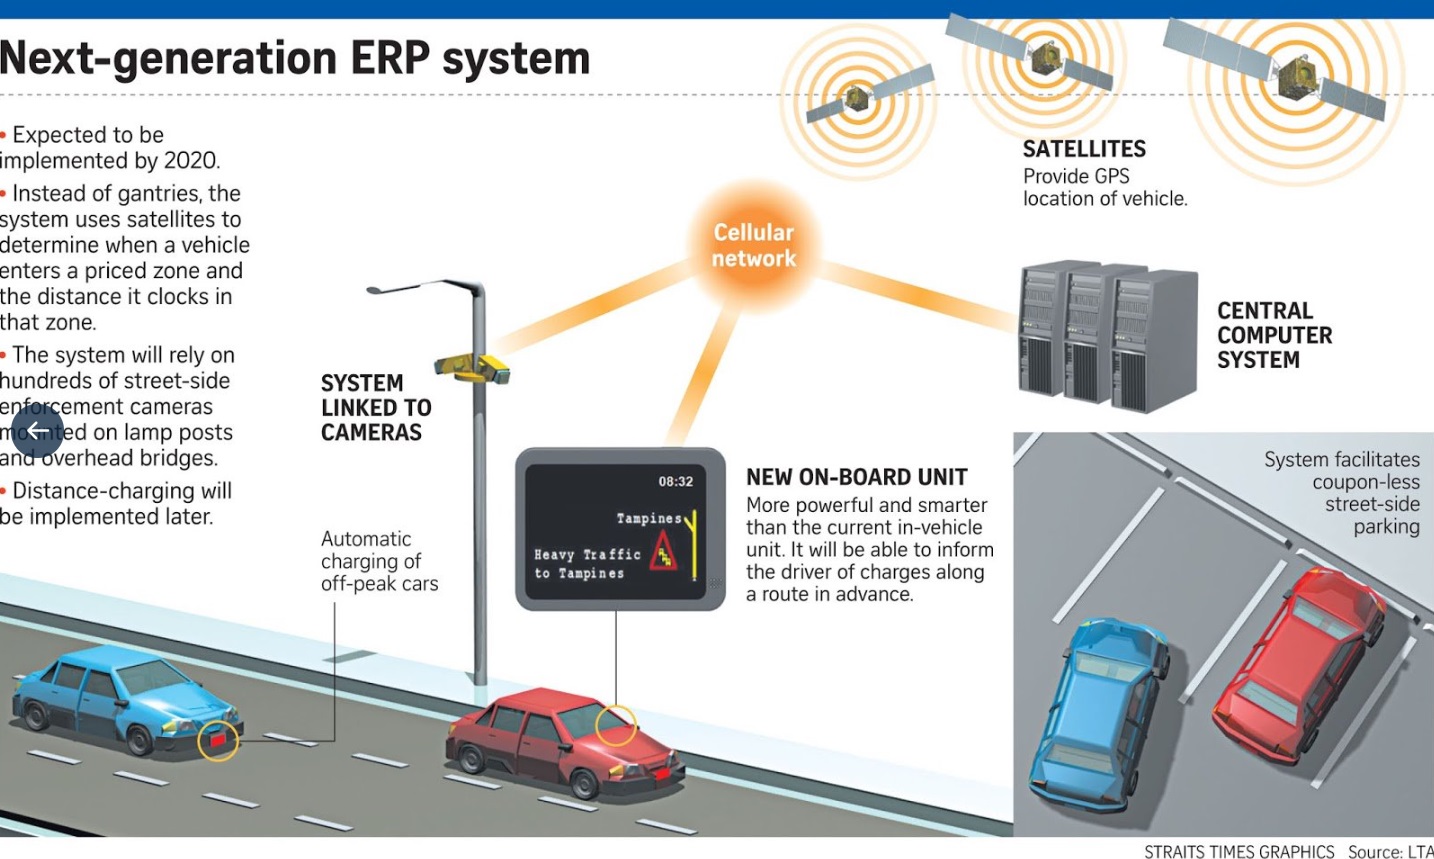 สิงคโปร์เตรียมใช้ระบบ Satellite-based Electronic Road Pricing System เช็คการเคลื่อนไหวรถยนต์พร้อมกำหนดค่าผ่านใหม่ทั้งระบบ